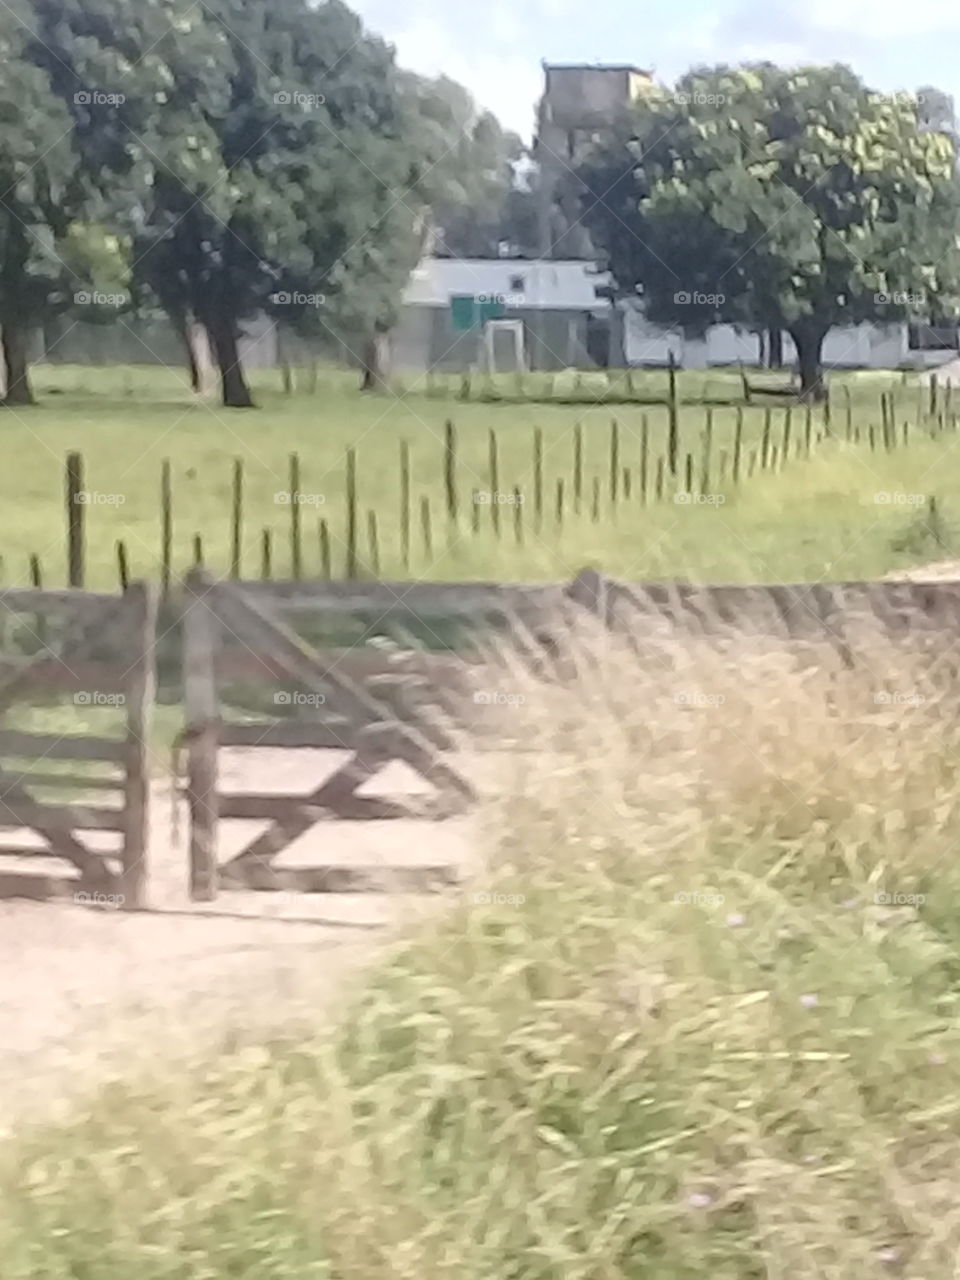 tranquera y camino de entrada a un campo con cerca de palos y alambre que separa el campo de la zona habitada.